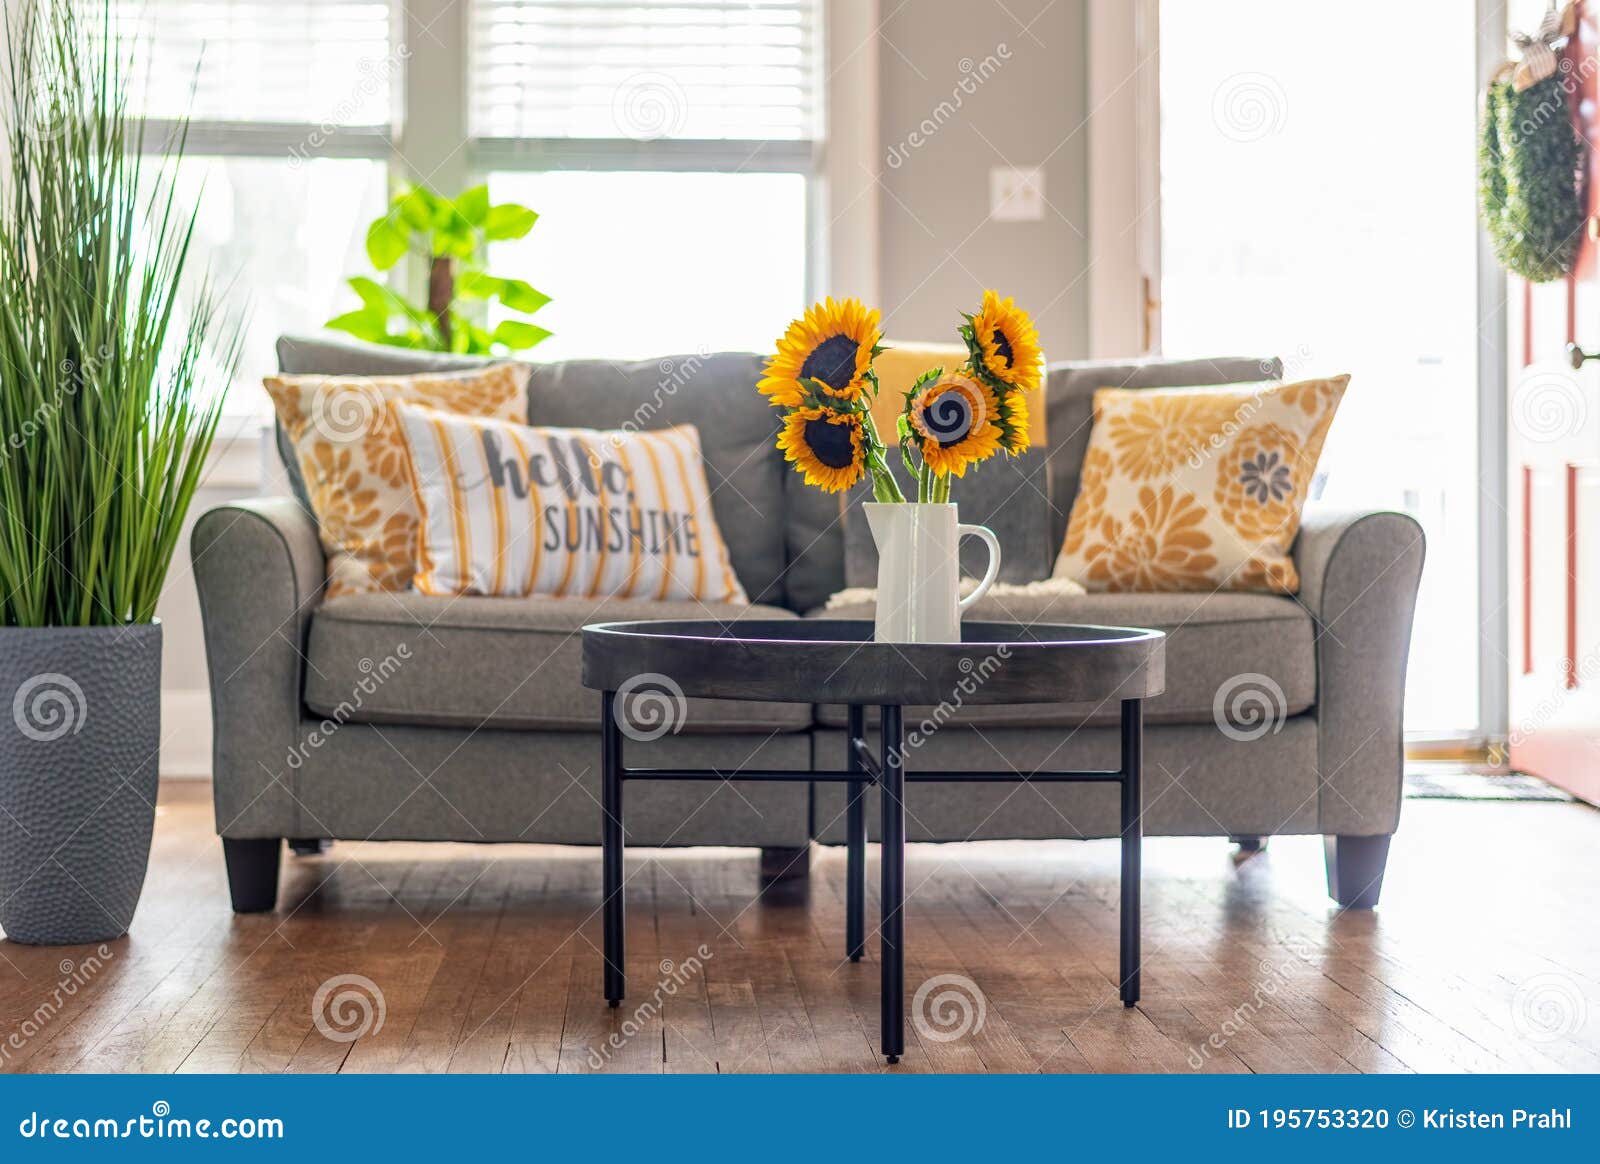 sunflower themed living room